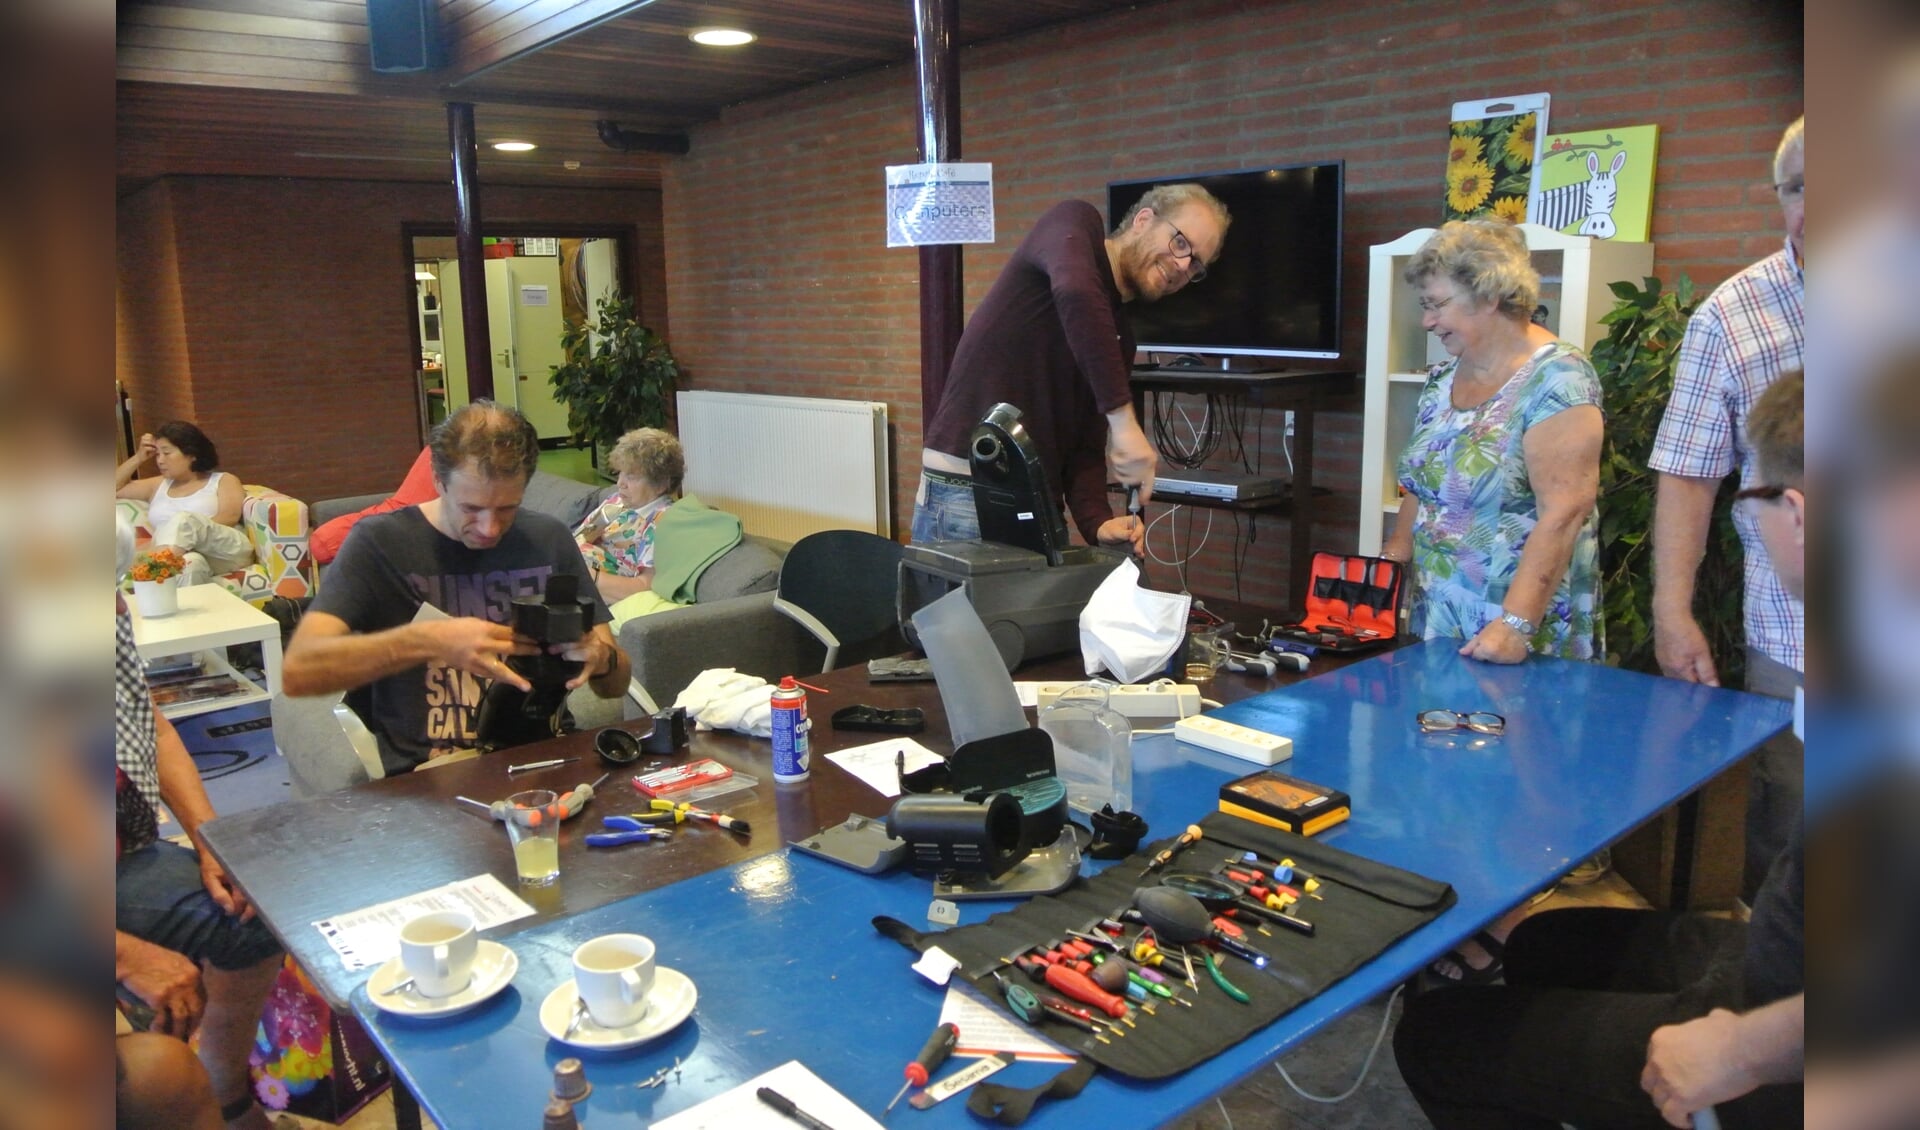 Het Repair Café wordt georganiseerd door Transition Town de Bilt in samenwerking met welzijnsorganisatie WVT.